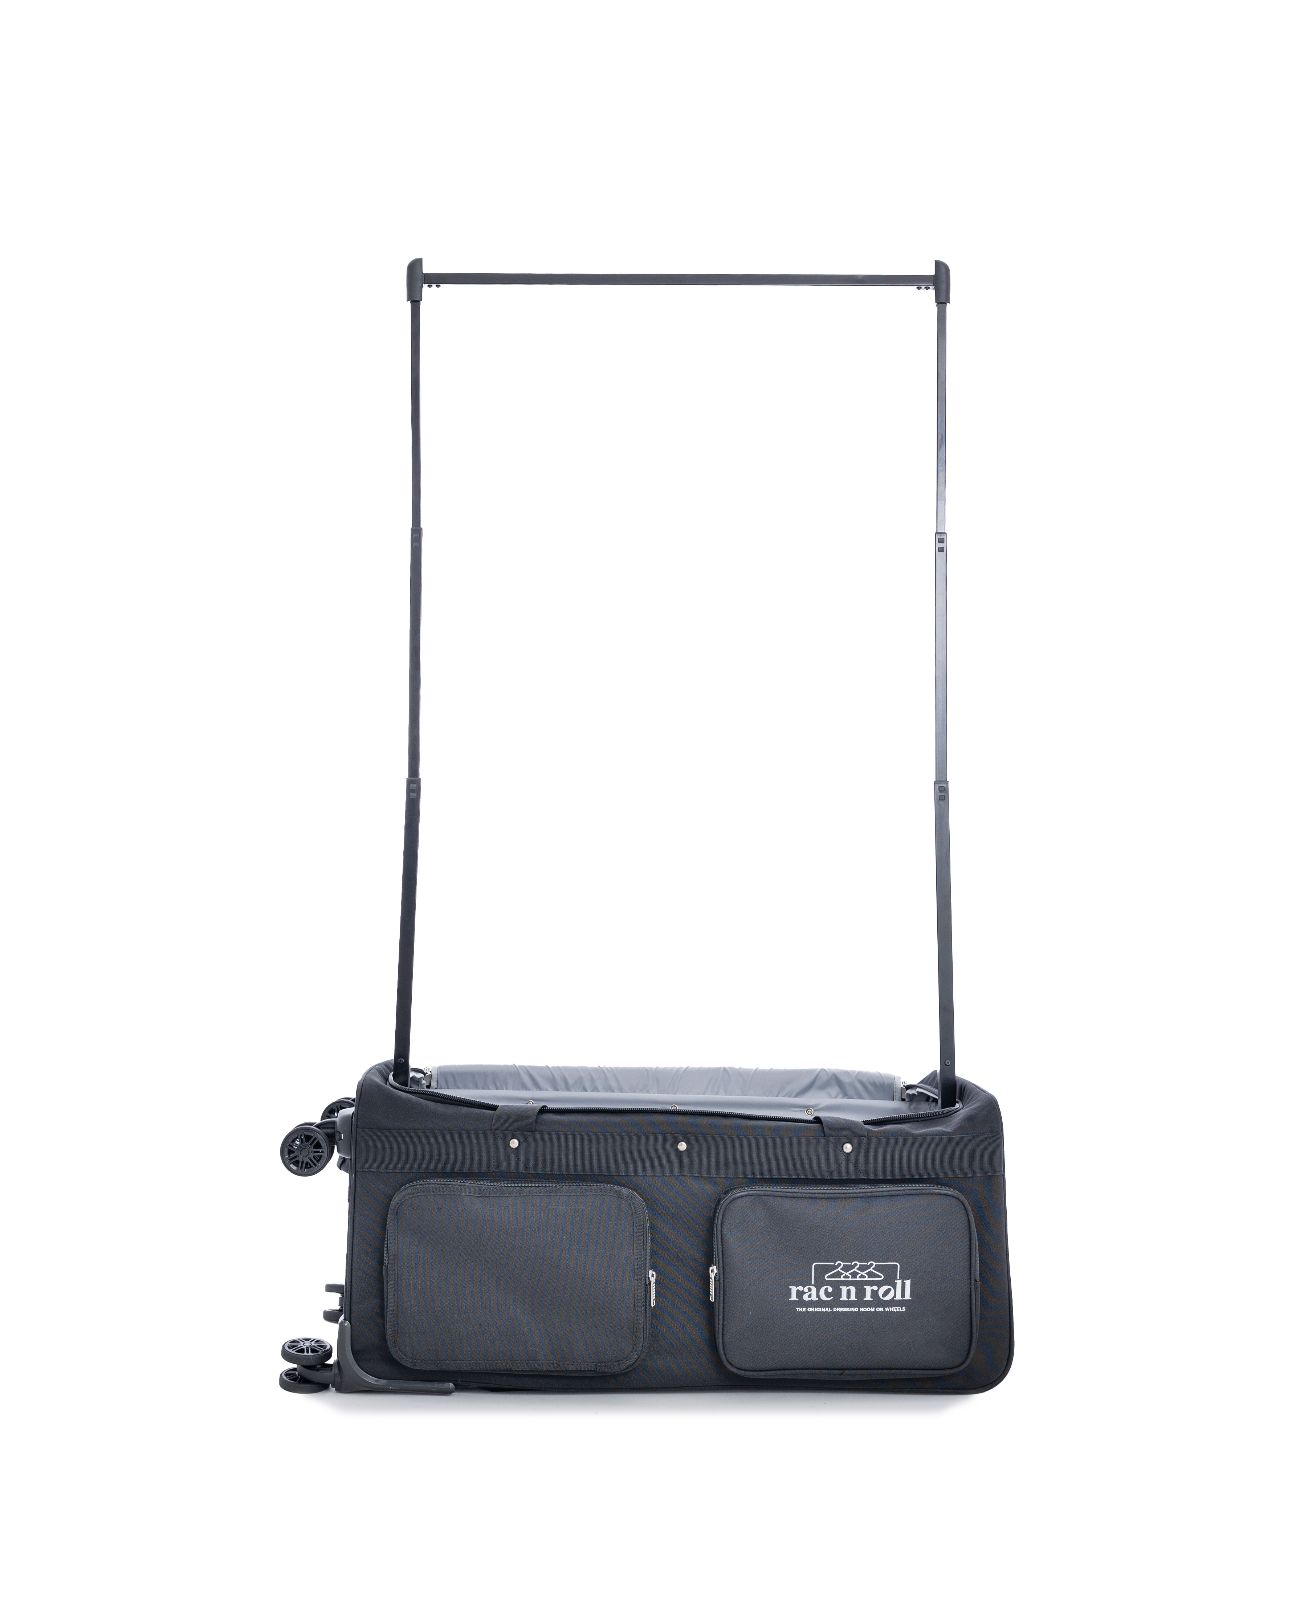 Buy Rac N Roll Medium 2.0 Duffle Bag Online at $229.99 | Beyond The Barre